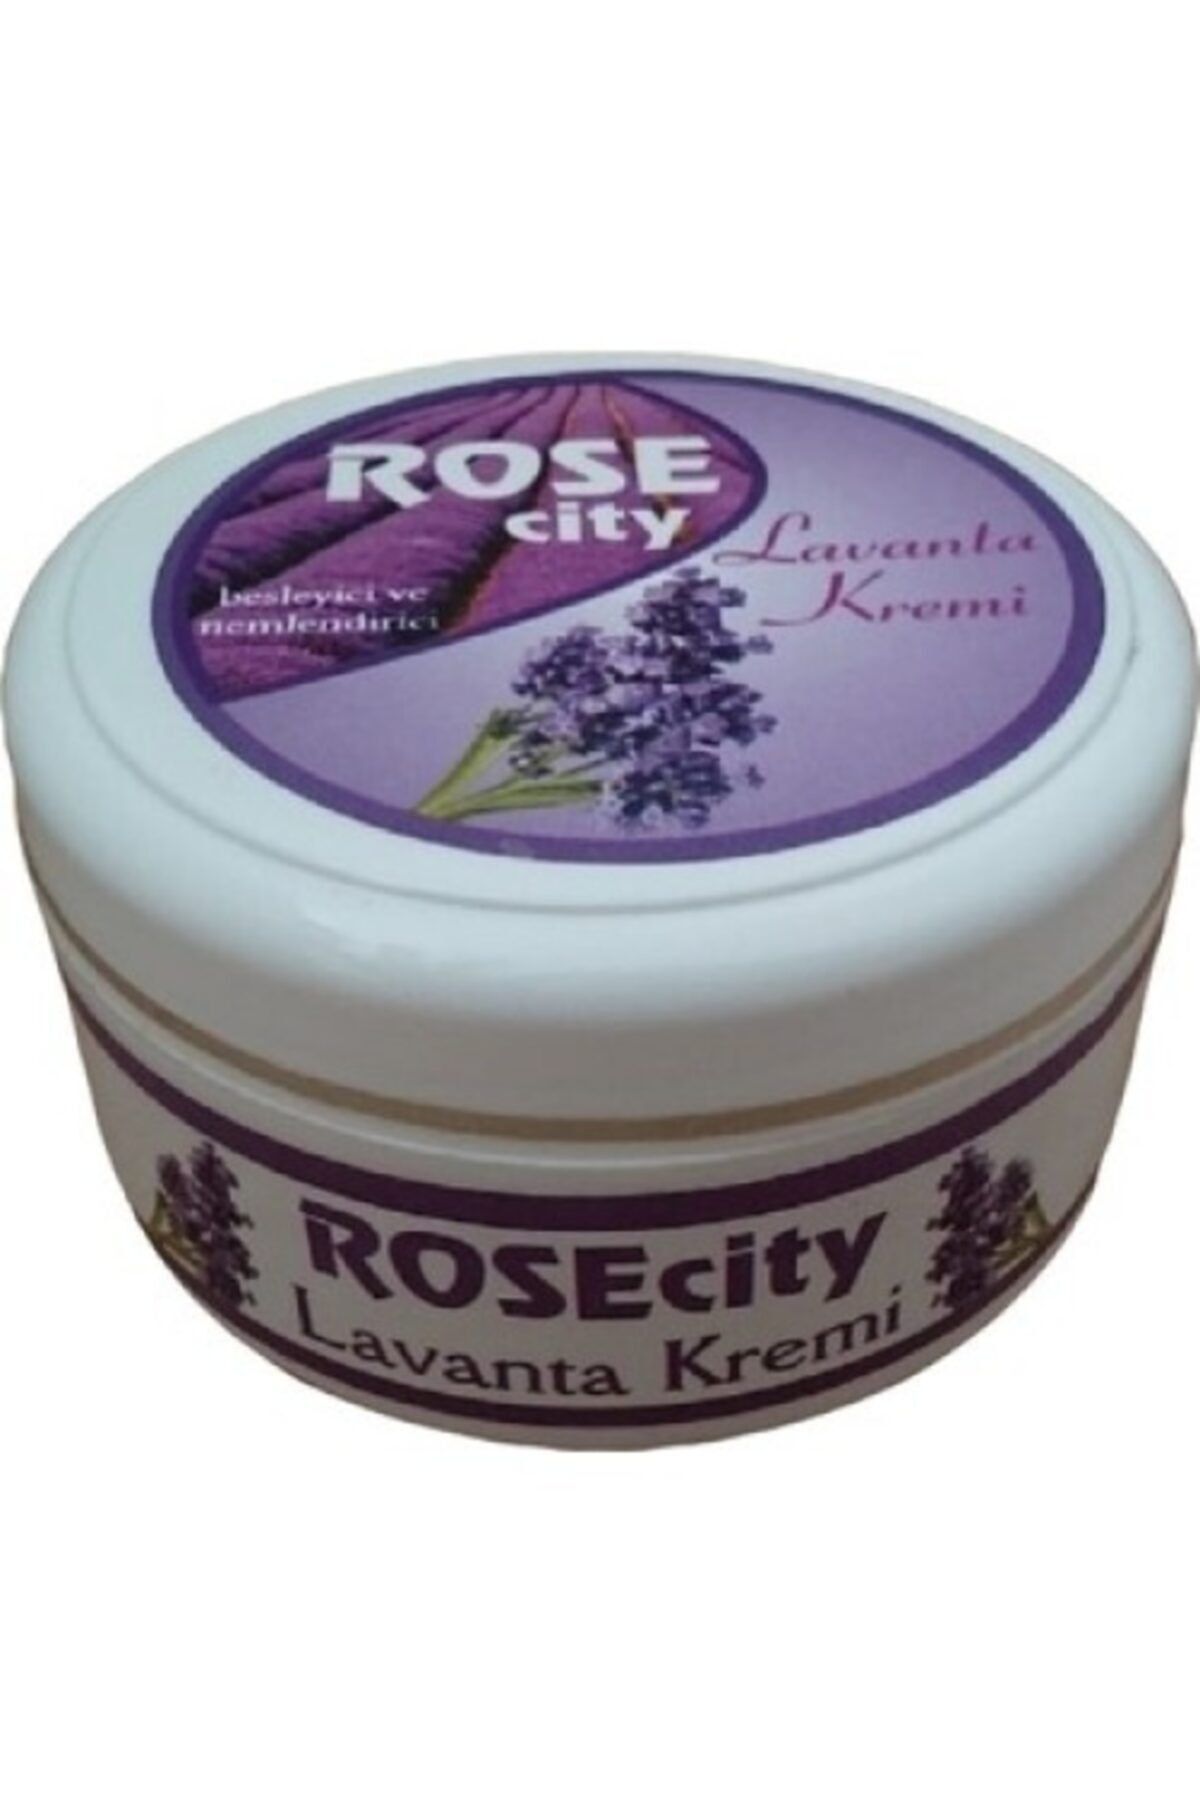 rosecity Lavanta Kremi 120 ml Besleyici Ve Nemlendirici